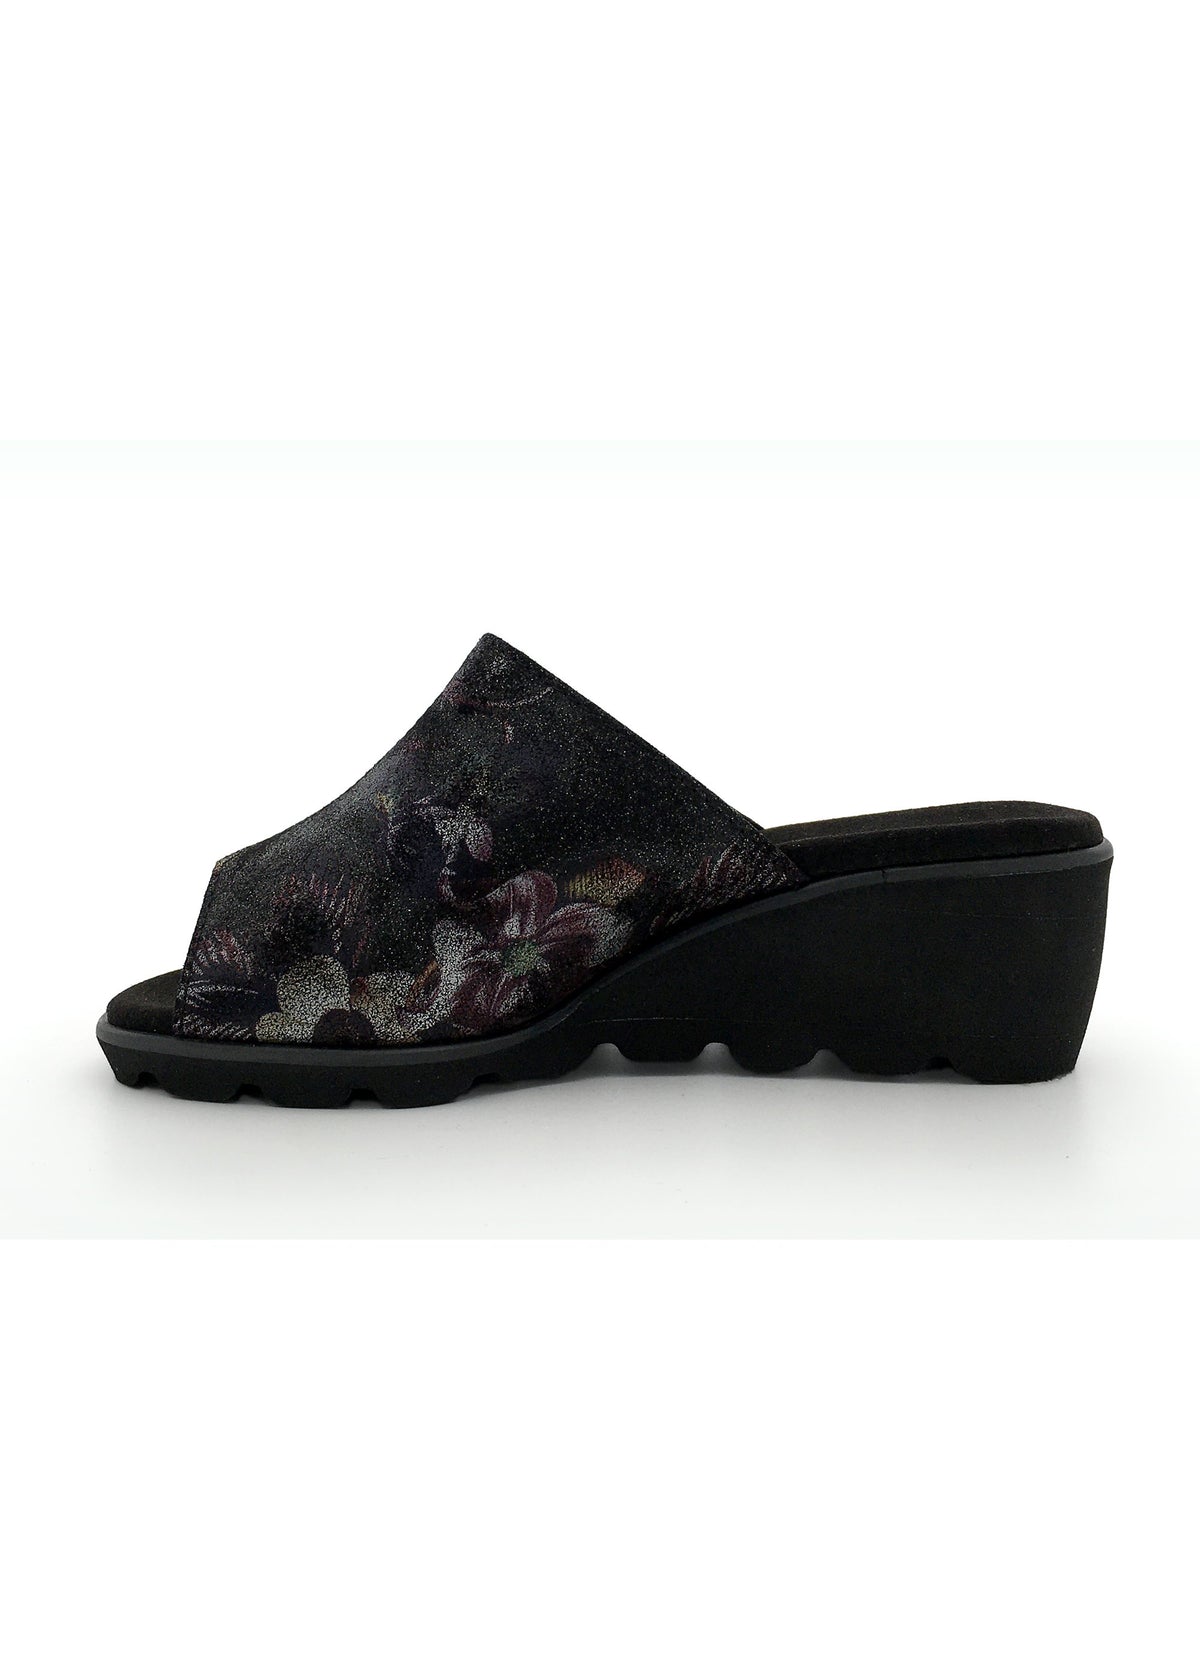 Stiletto sandals with wedge heel - dark floral pattern